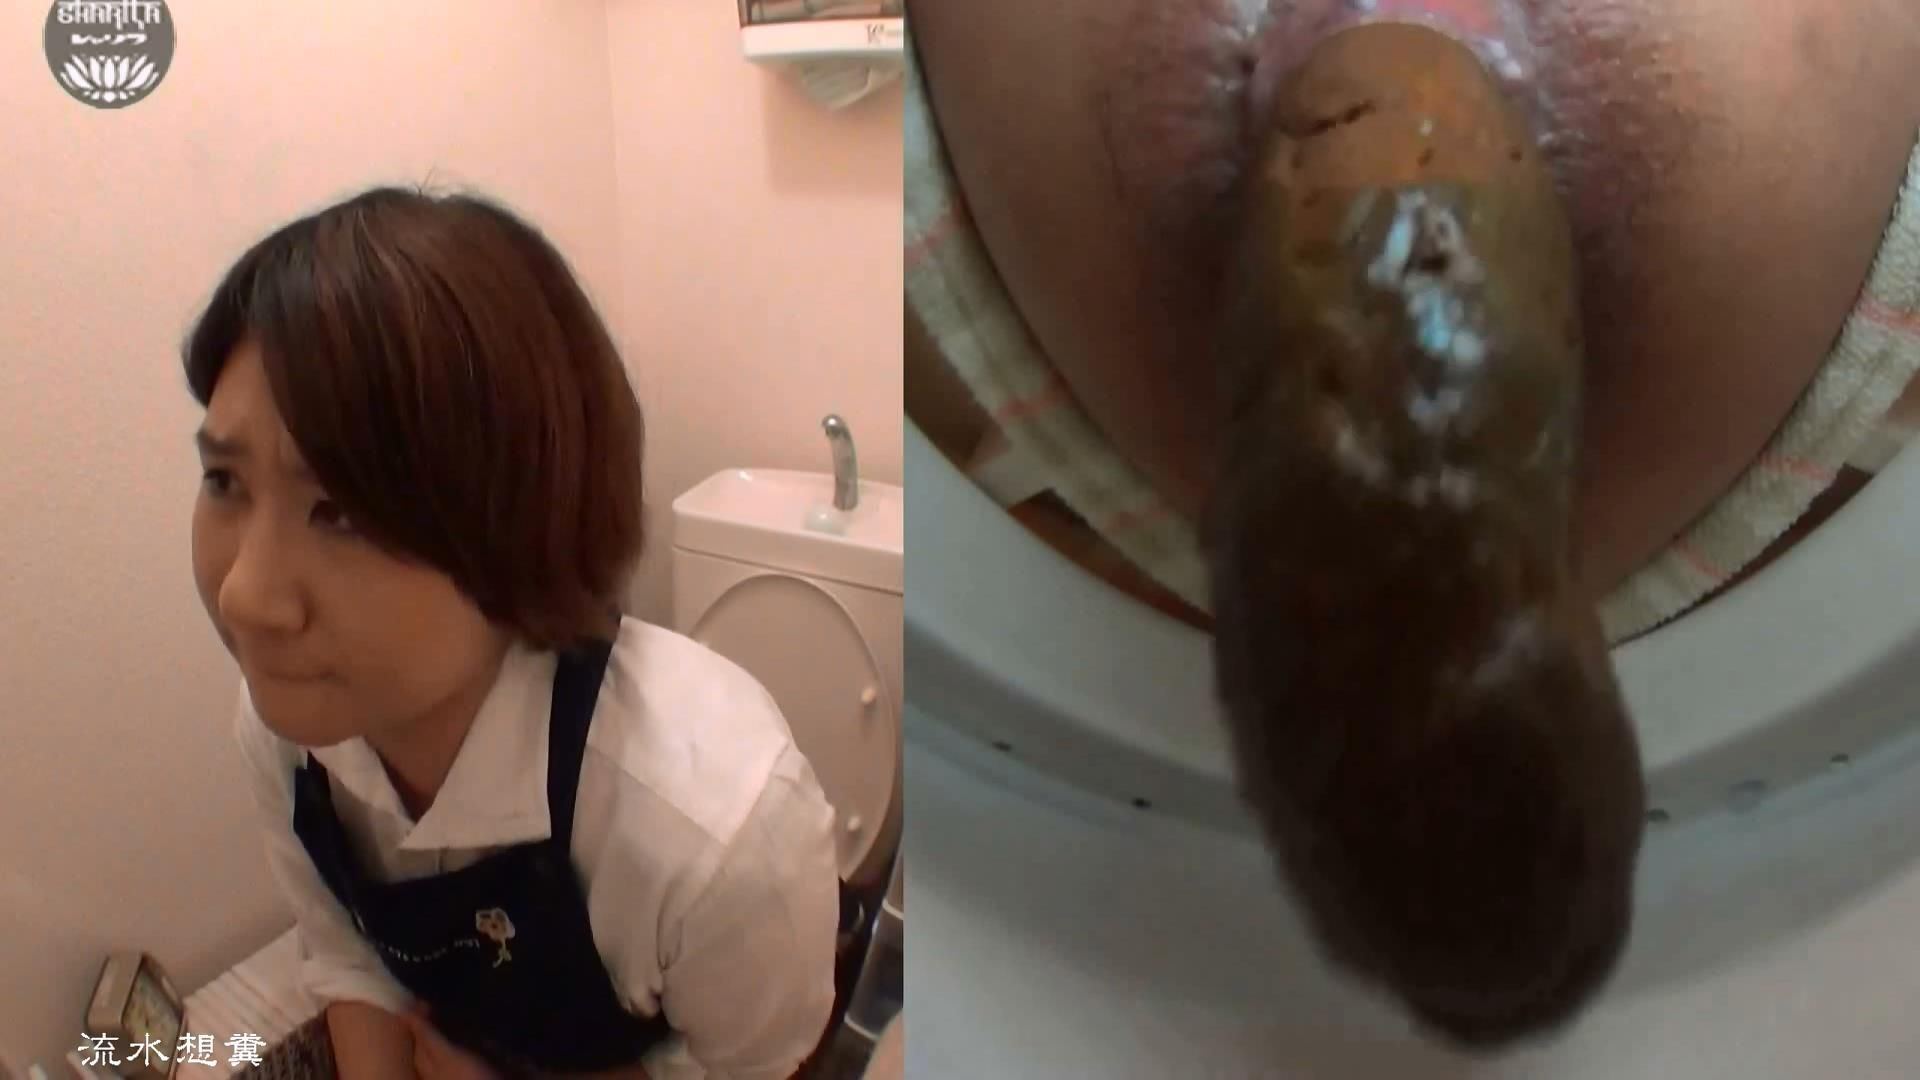 Asian toilet voyeur videos pooping shitting